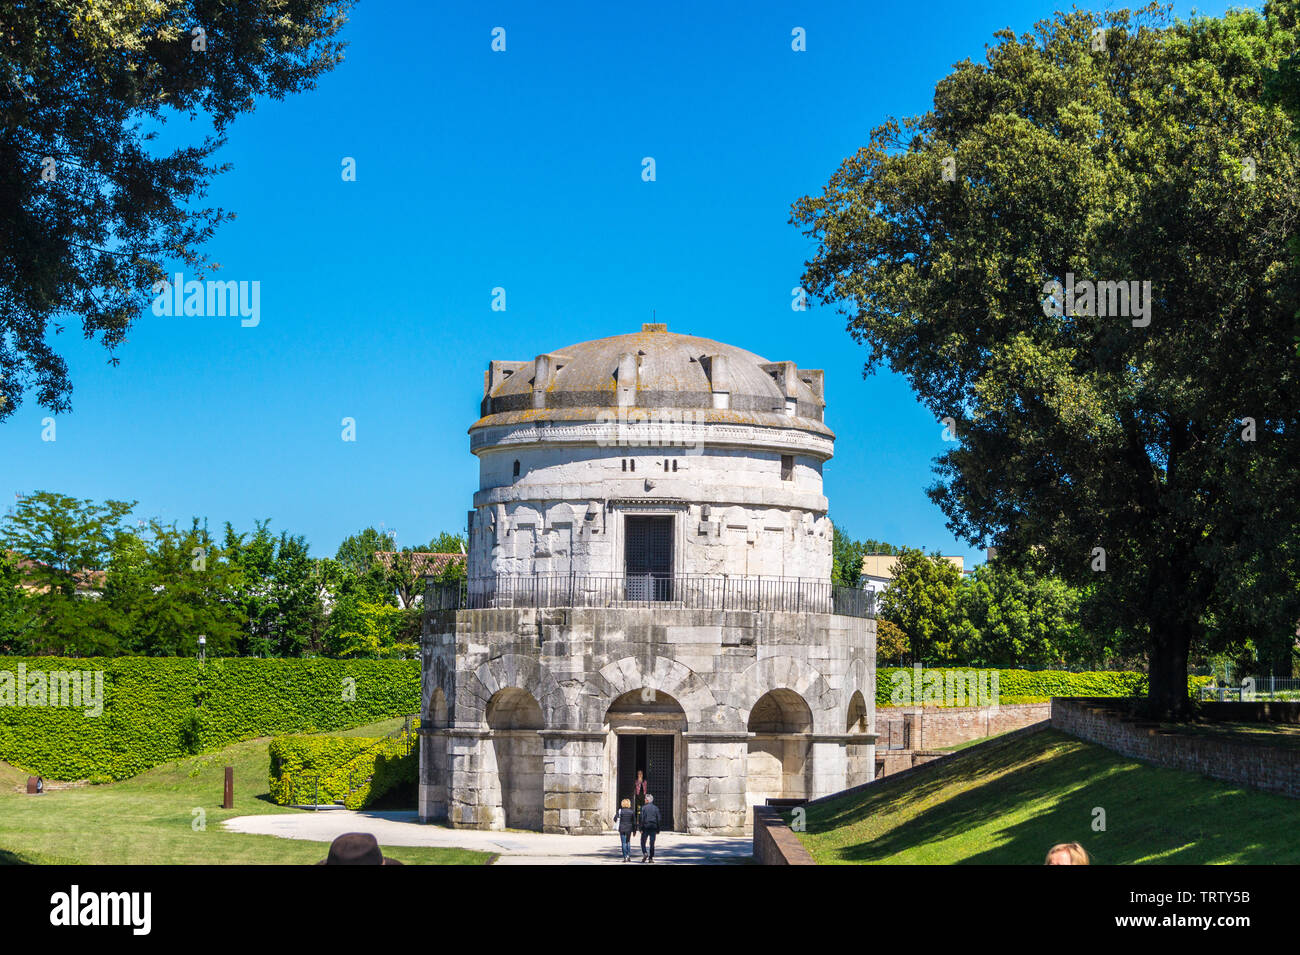 Mausoleo de Teodorico el Grande, AD520, Ravenna, Emilia-Romaña, Italia Foto de stock